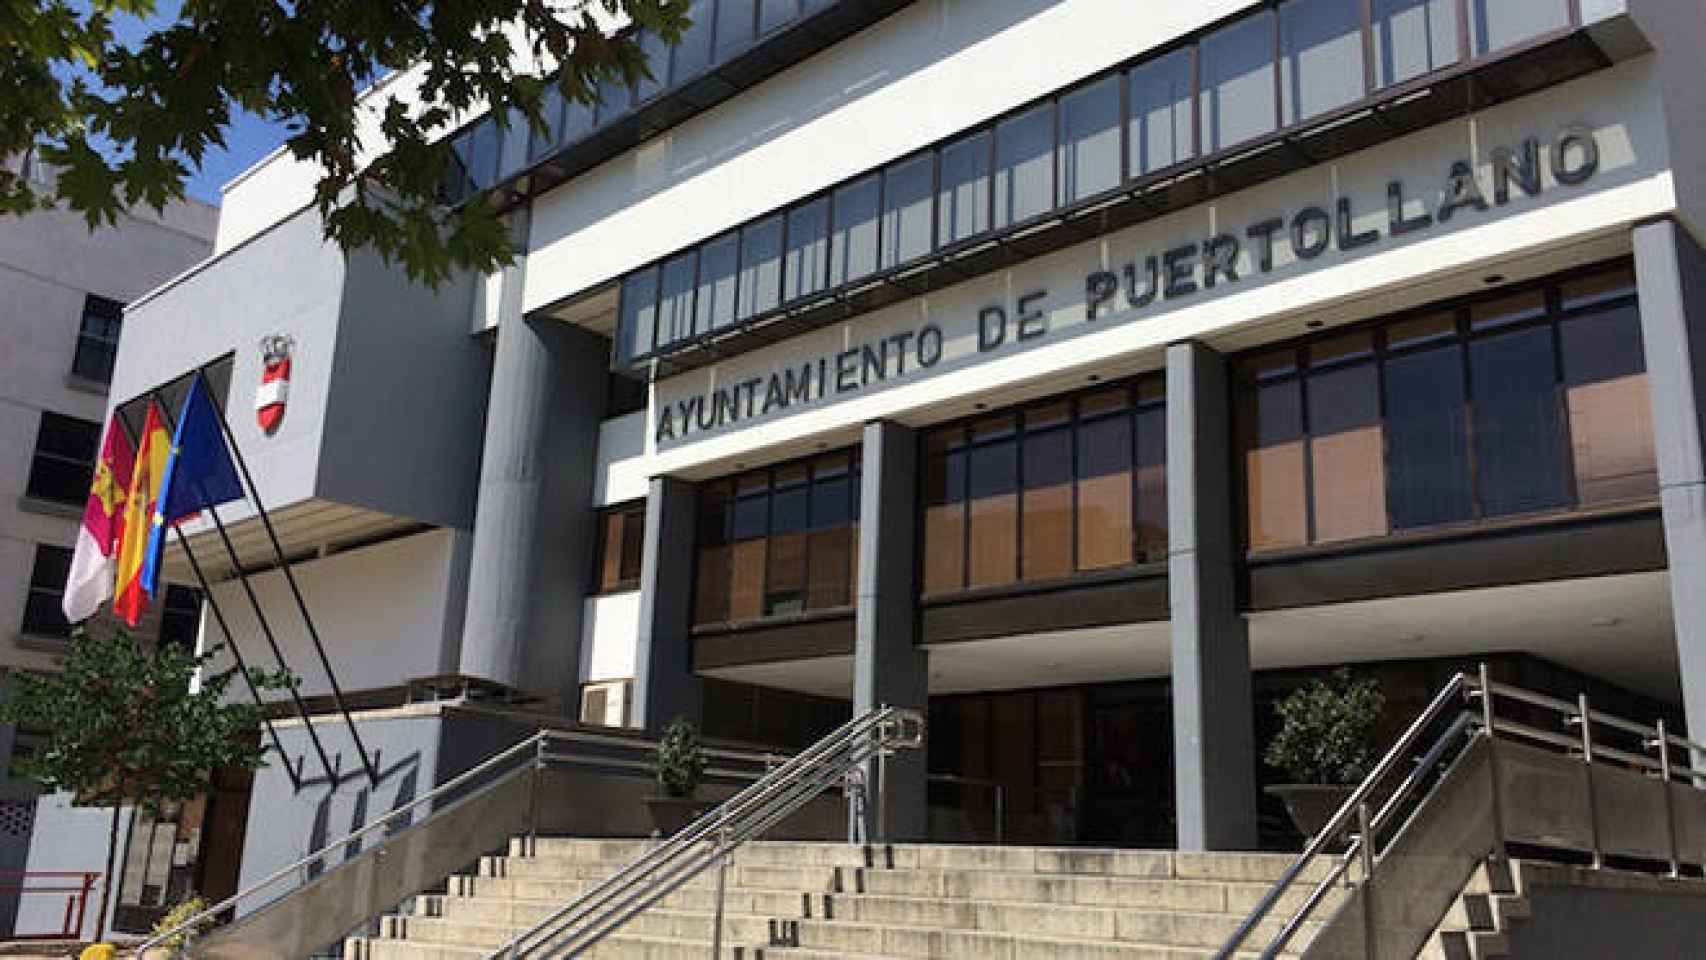 FOTO: Ayuntamiento de Puertollano.